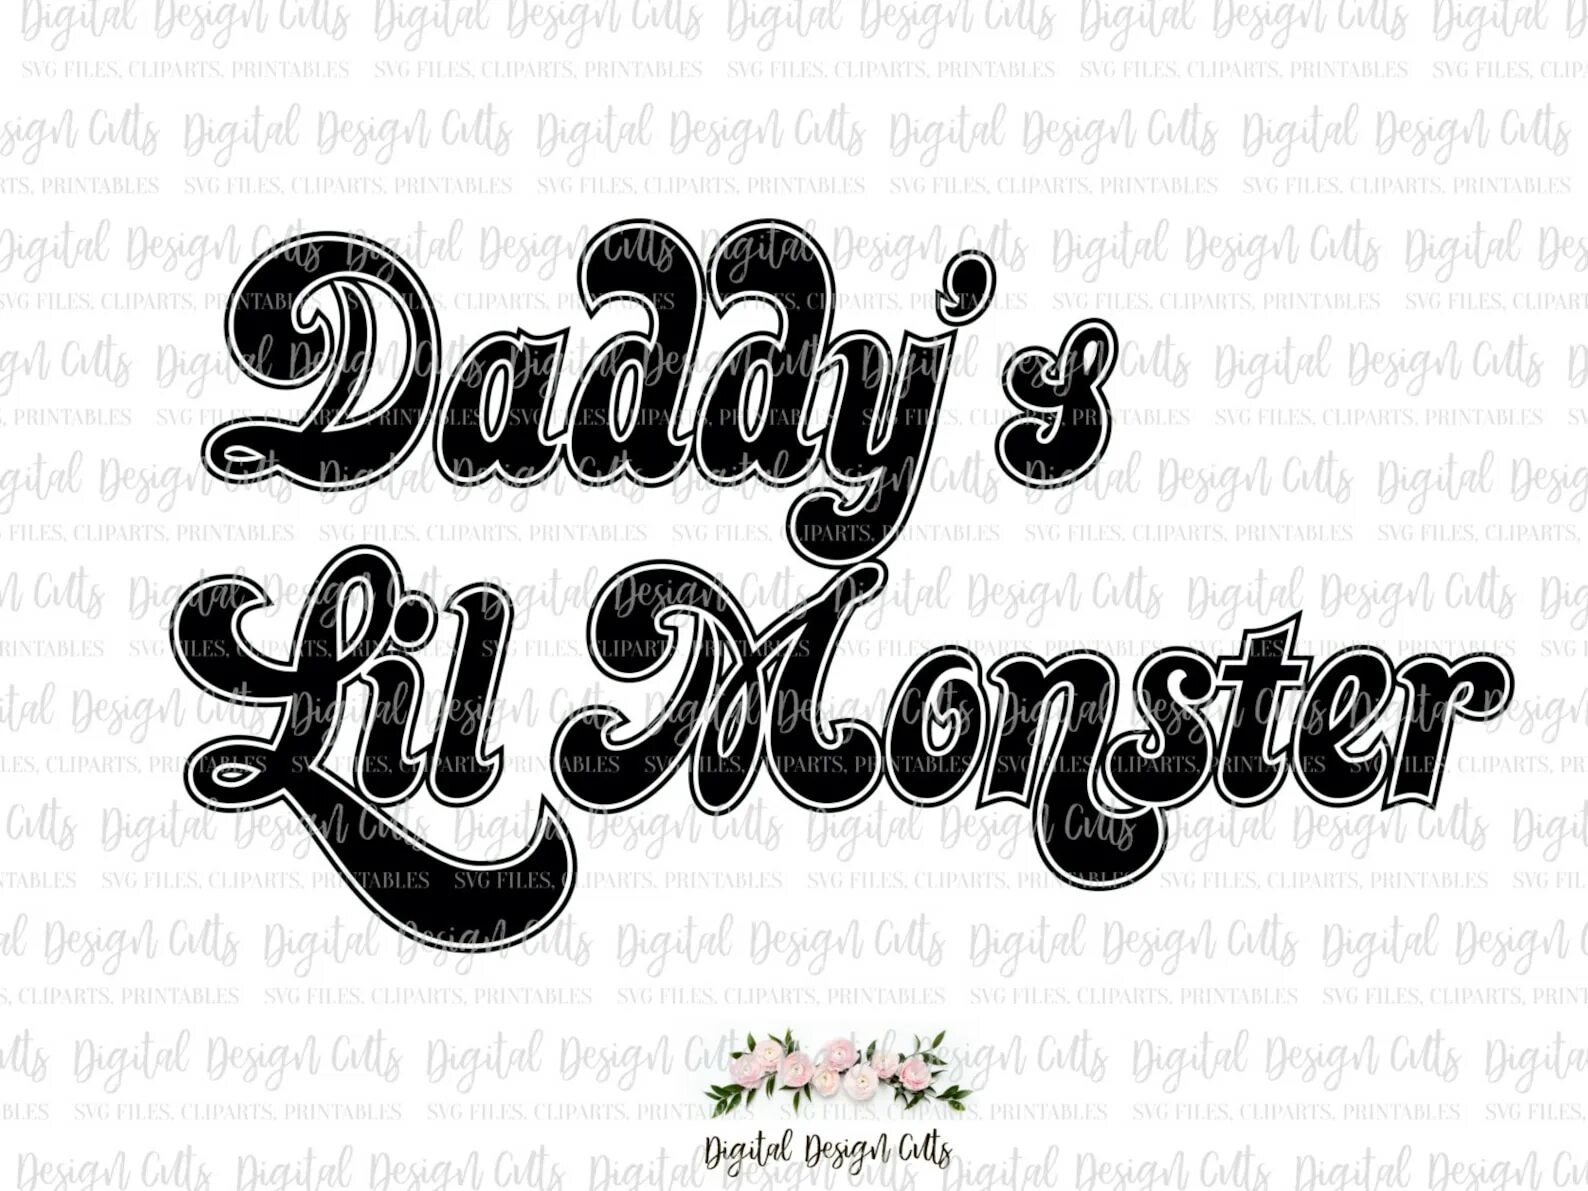 Daddy's lil. Надпись на футболке Харли Квинн. Daddy's Lil Monster. Daddy's Lil Monster надпись. Daddy's Lil Monster футболка.